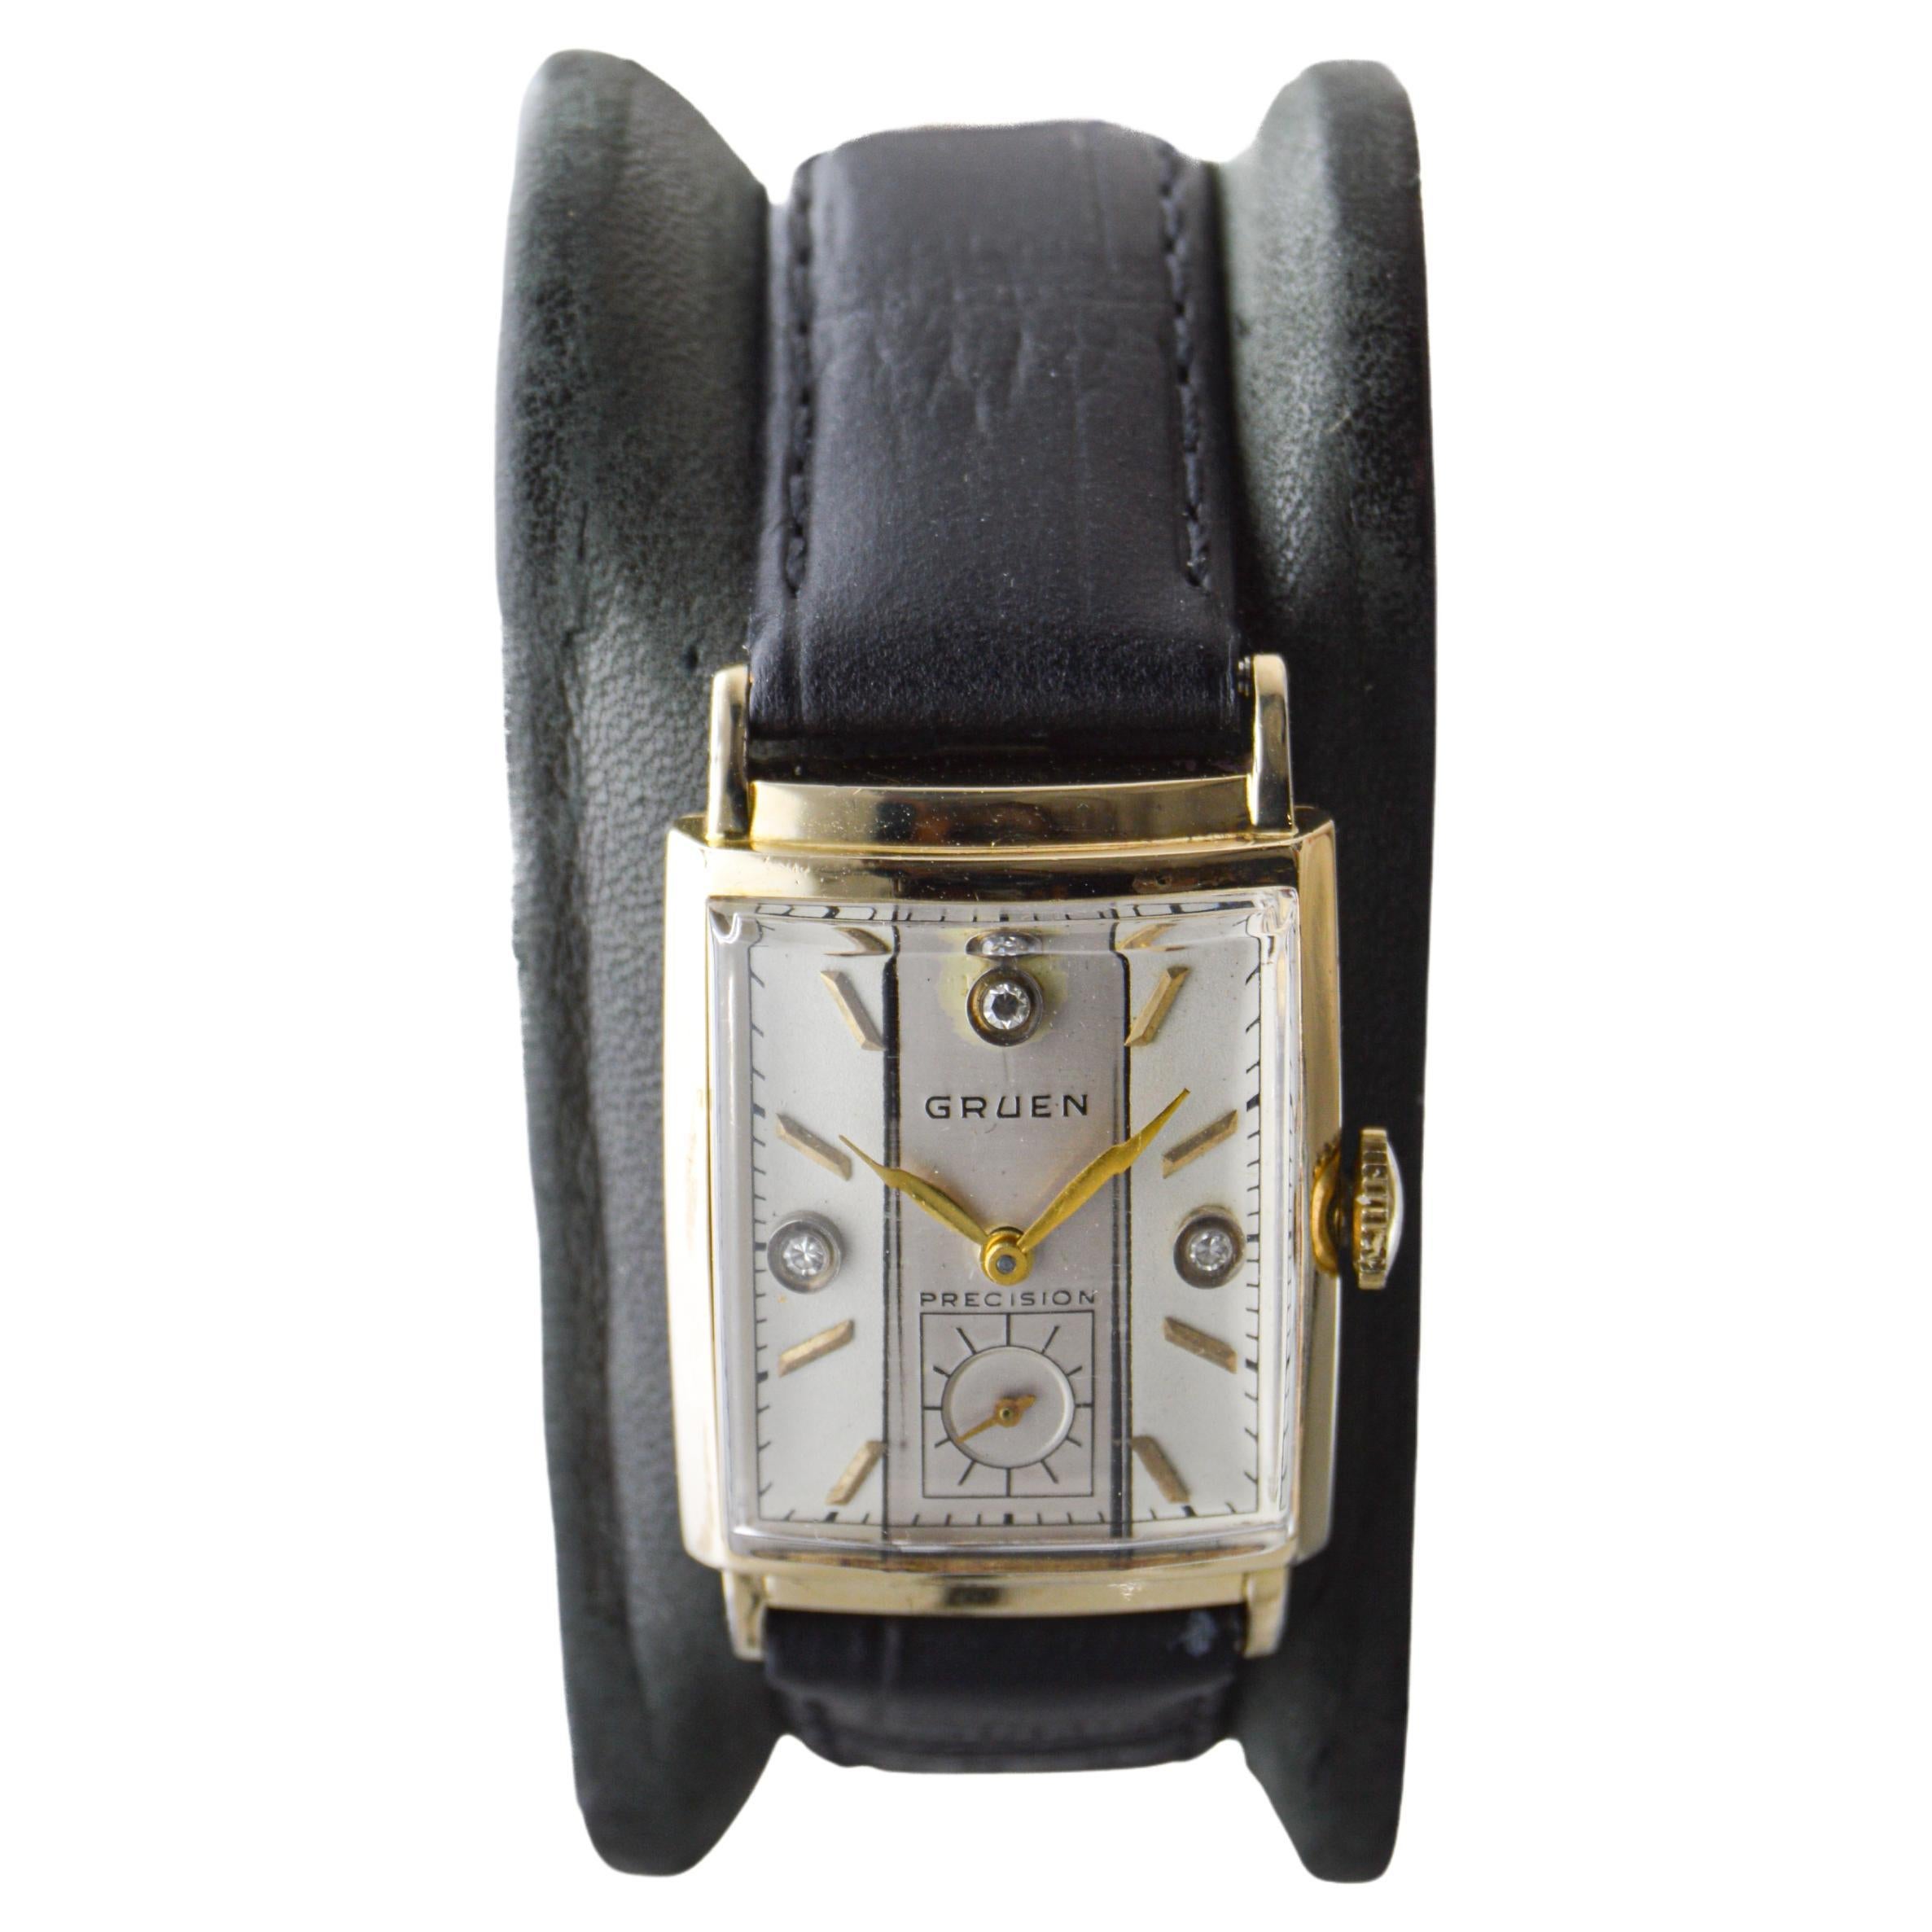 gruen curvex precision 14k gold watch